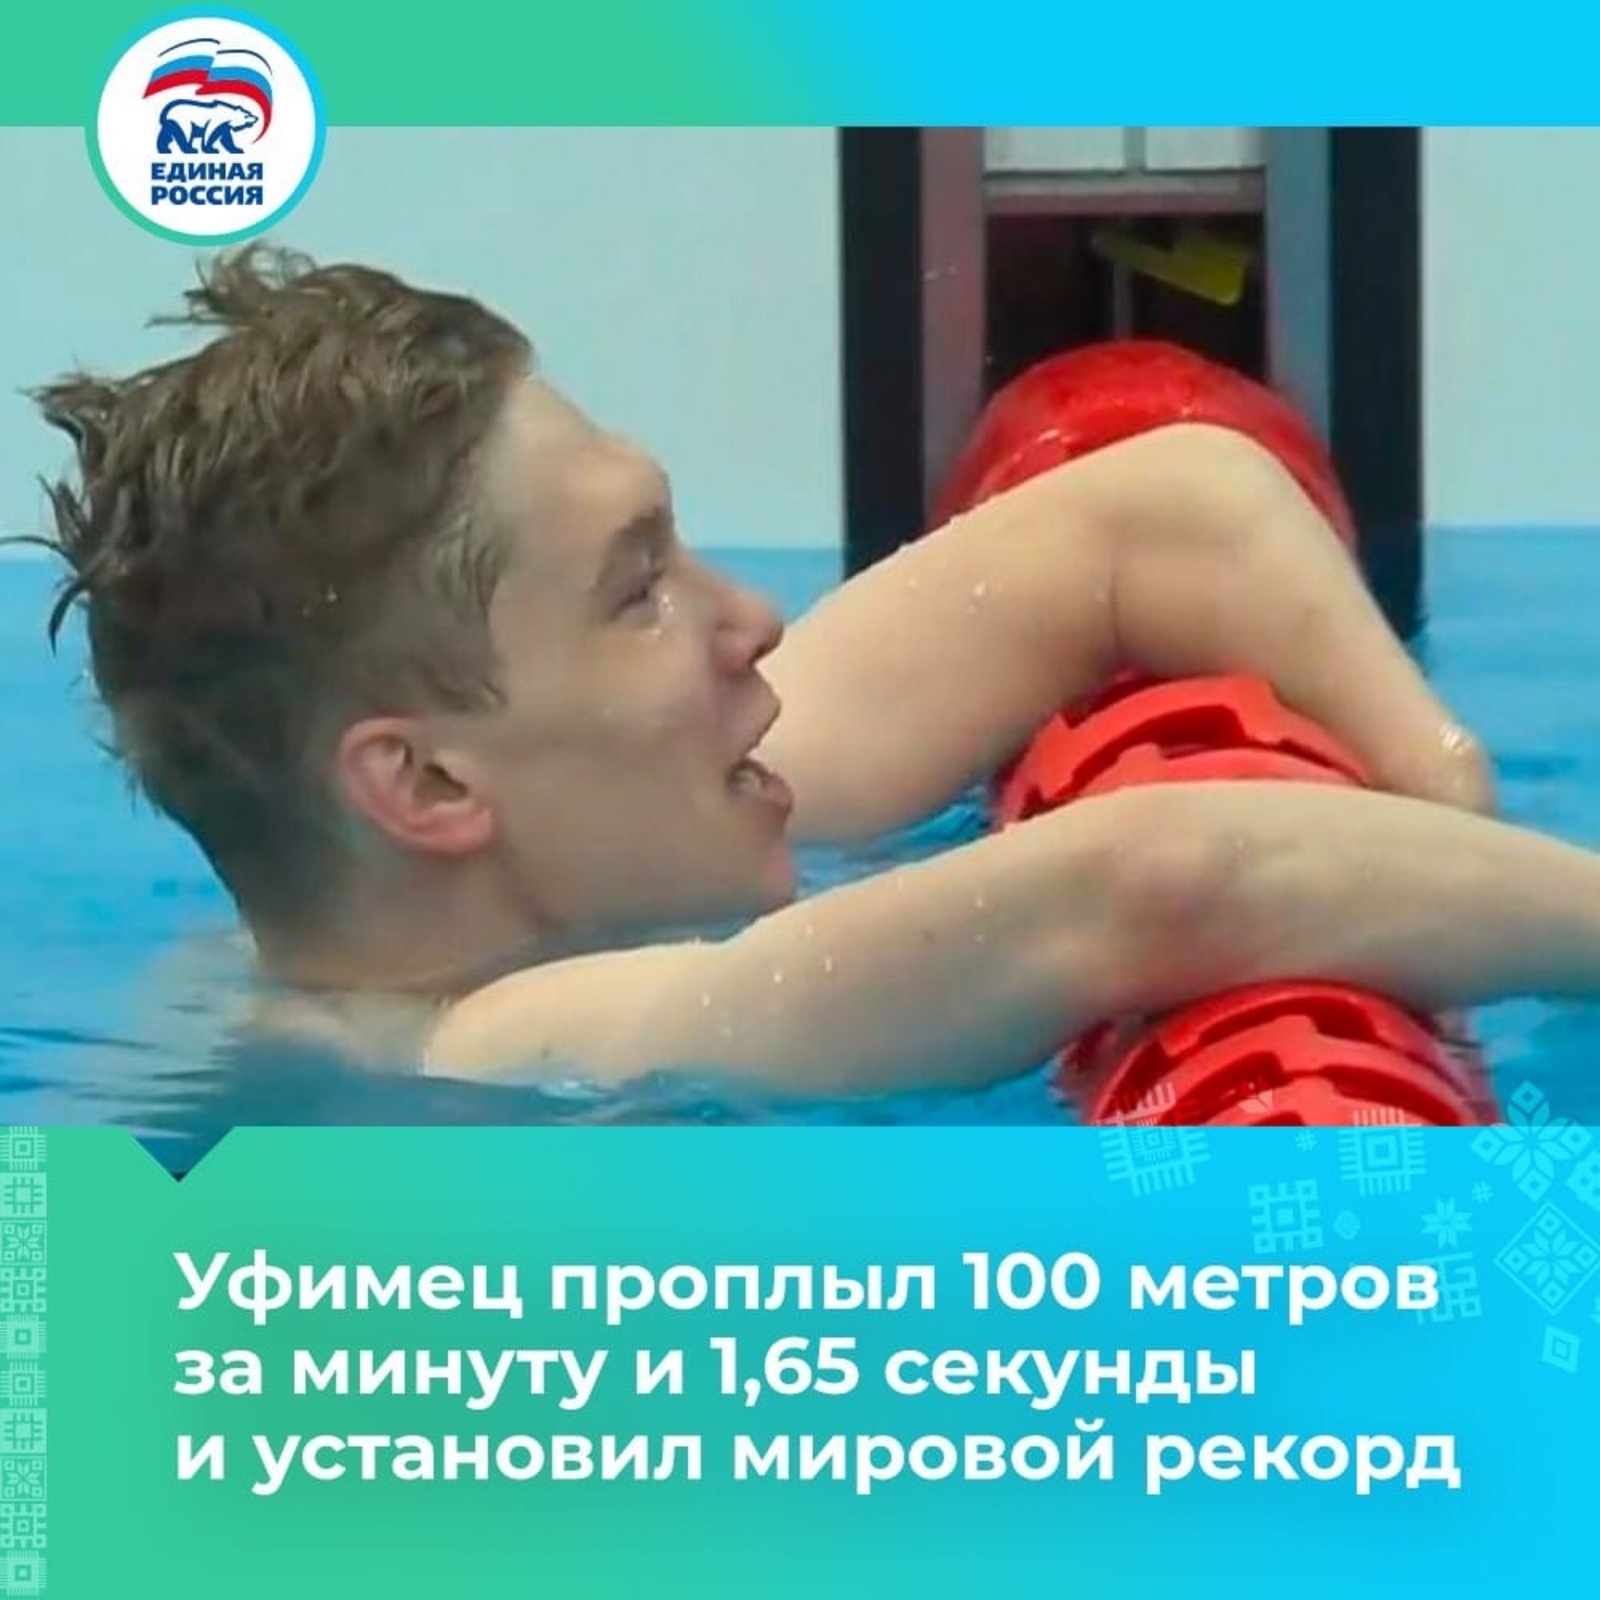 Уфимец проплыл 100 метров за минуту и 1,65 секунды и установил мировой рекорд